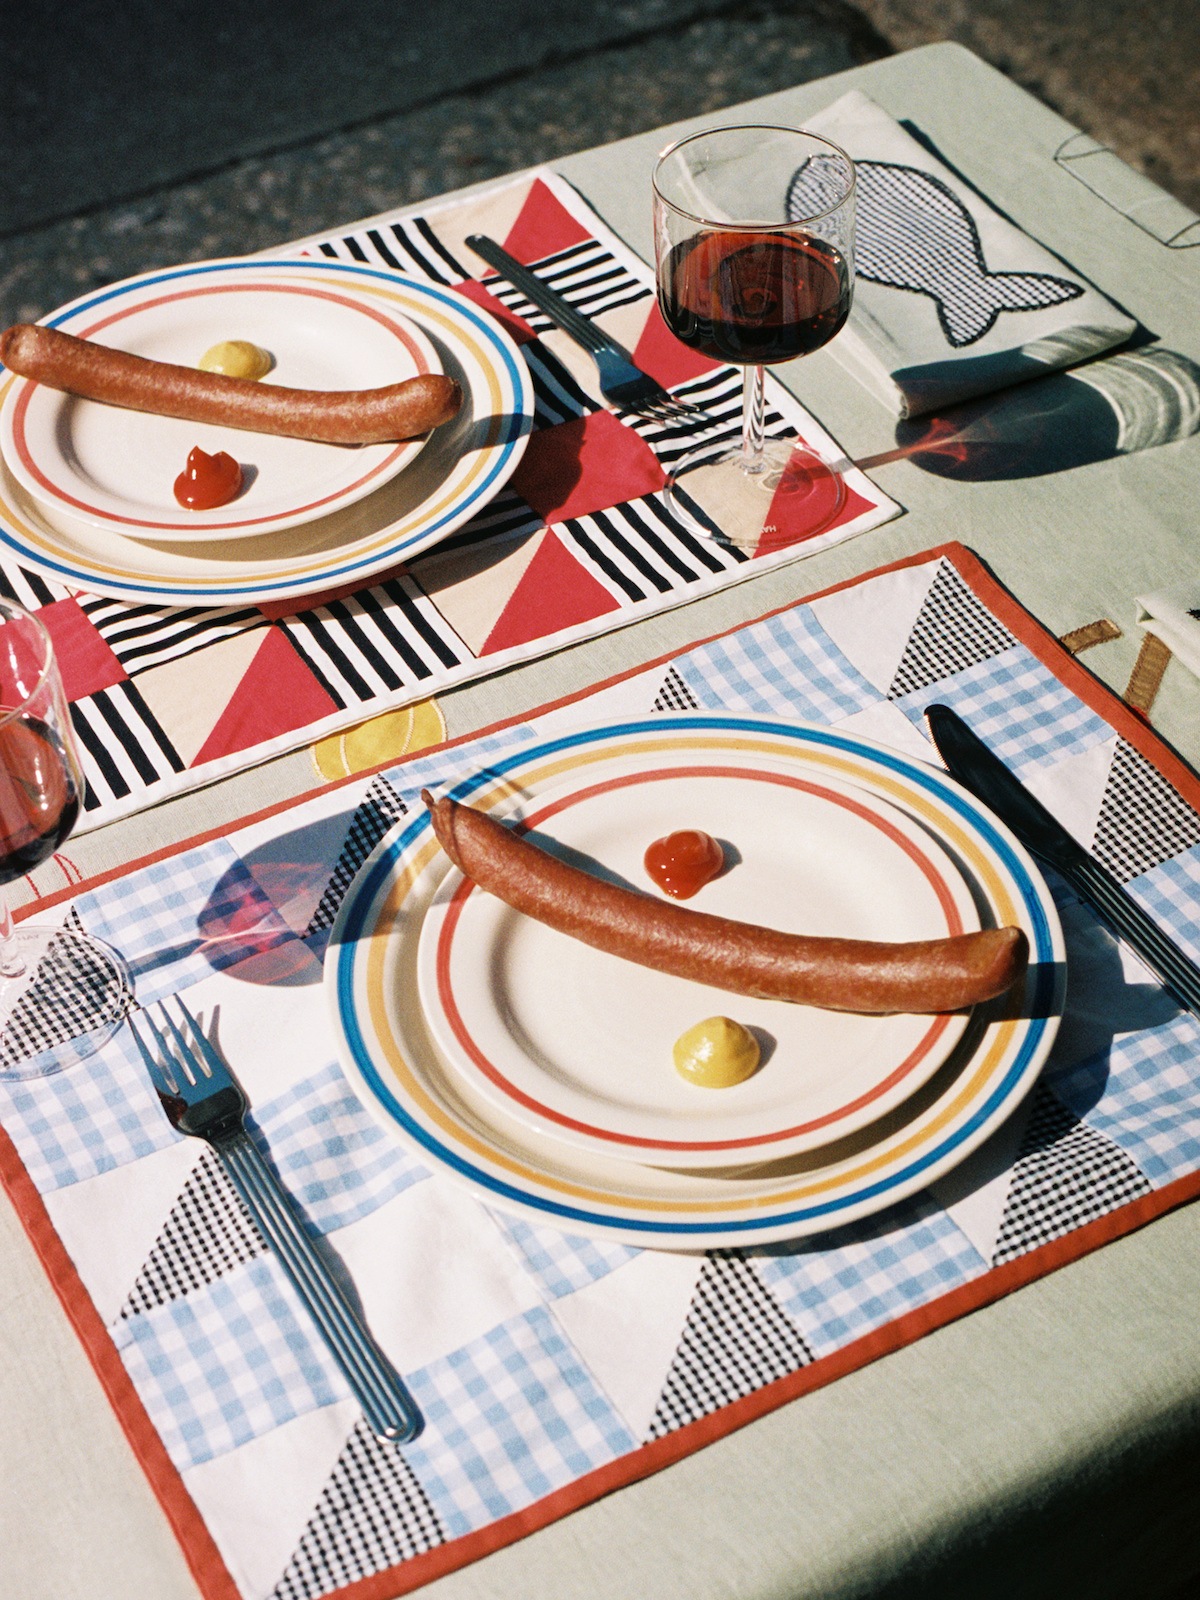 Zwei Tischsets mit Tellern und je einer Wiener Wurst, daneben jeweils ein klecks Ketchup und Senf